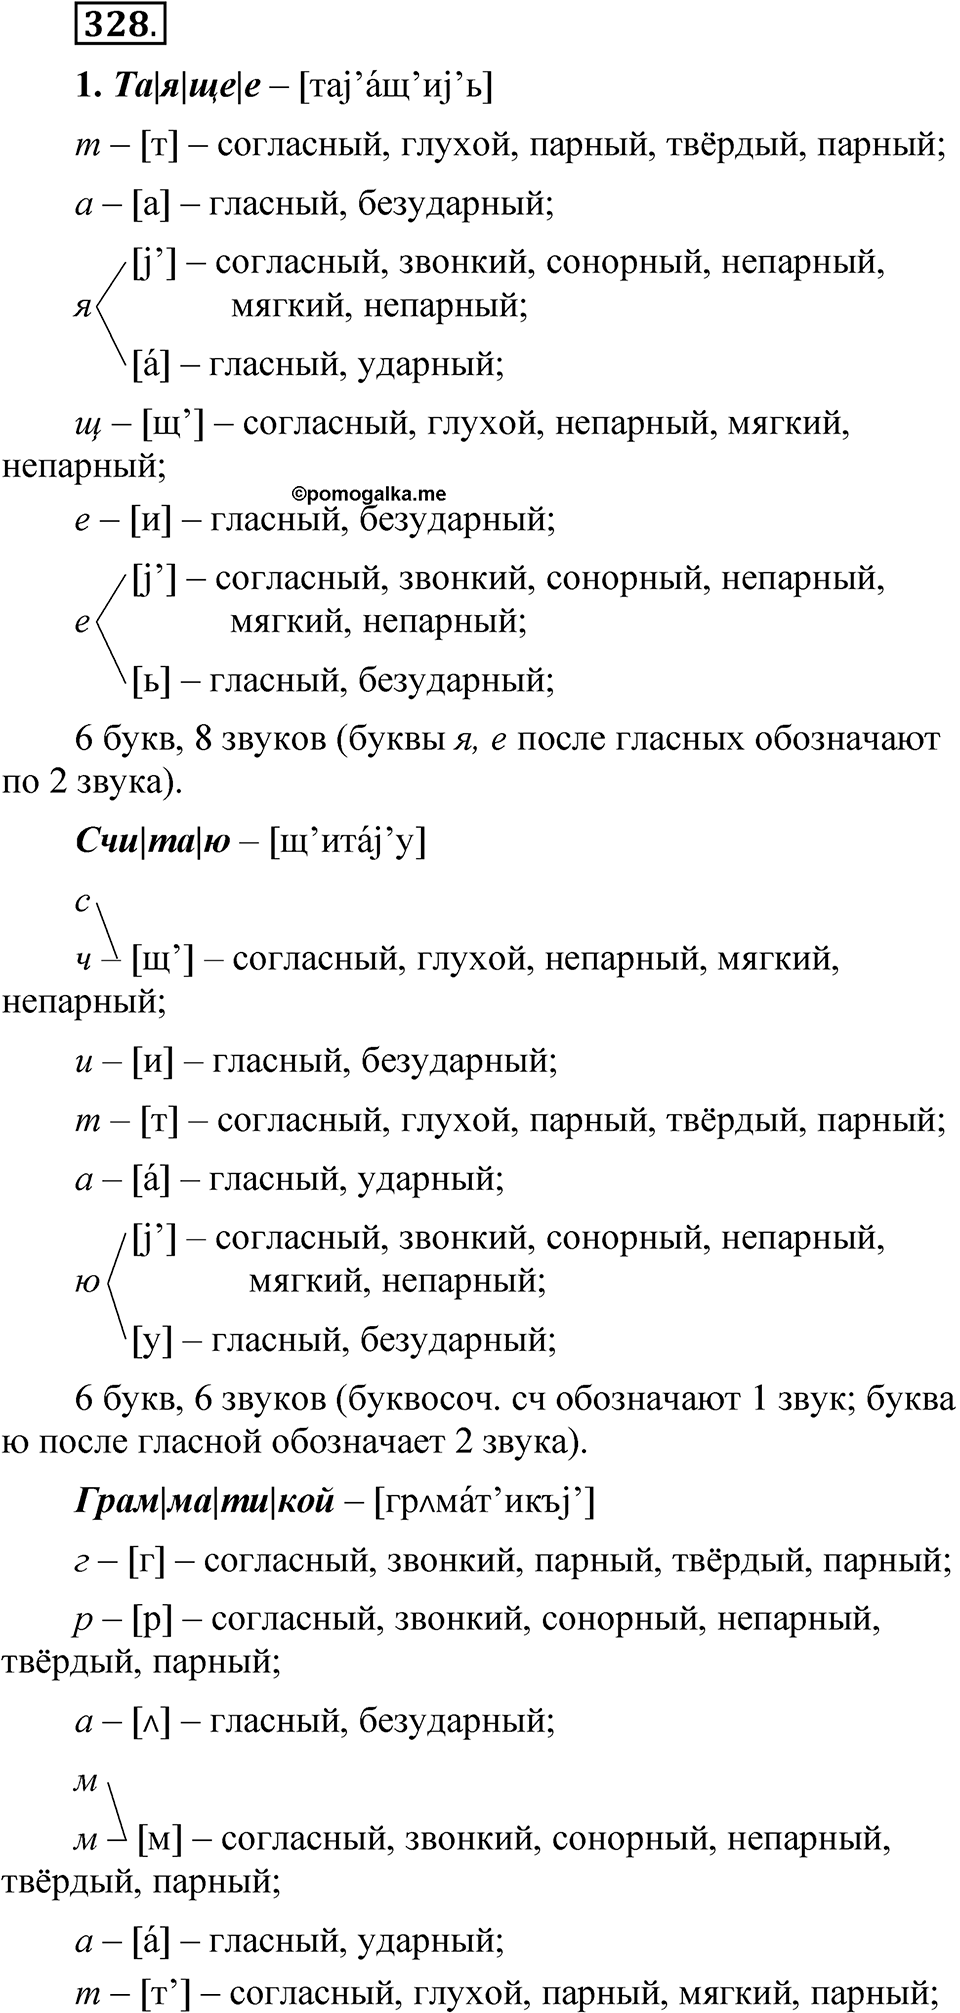 страница 229 упражнение 328 русский язык 5 класс Быстрова, Кибирева 2 часть 2021 год